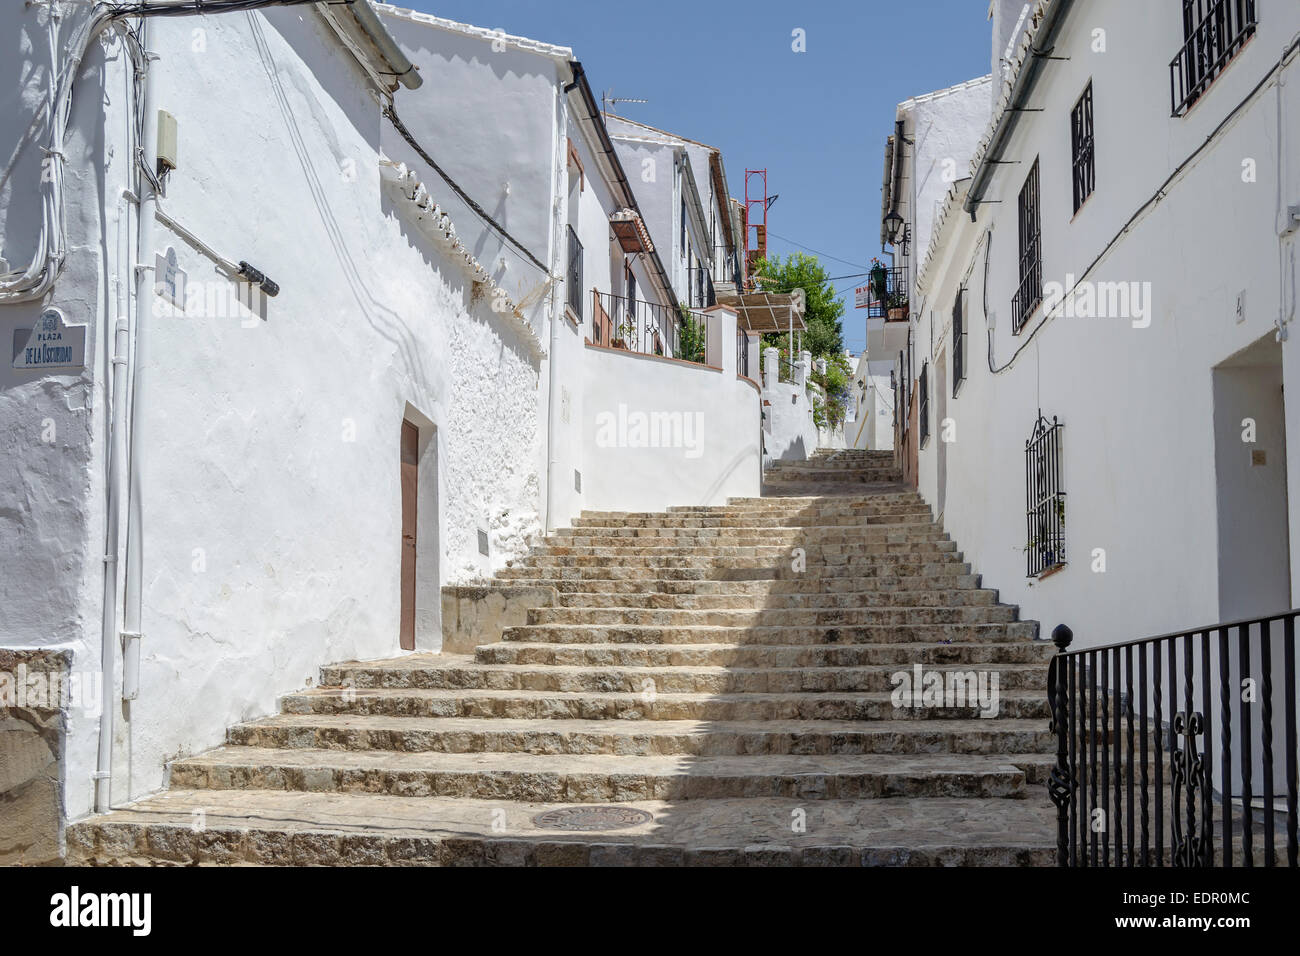 White Town of Ronda, Spain Stock Photo